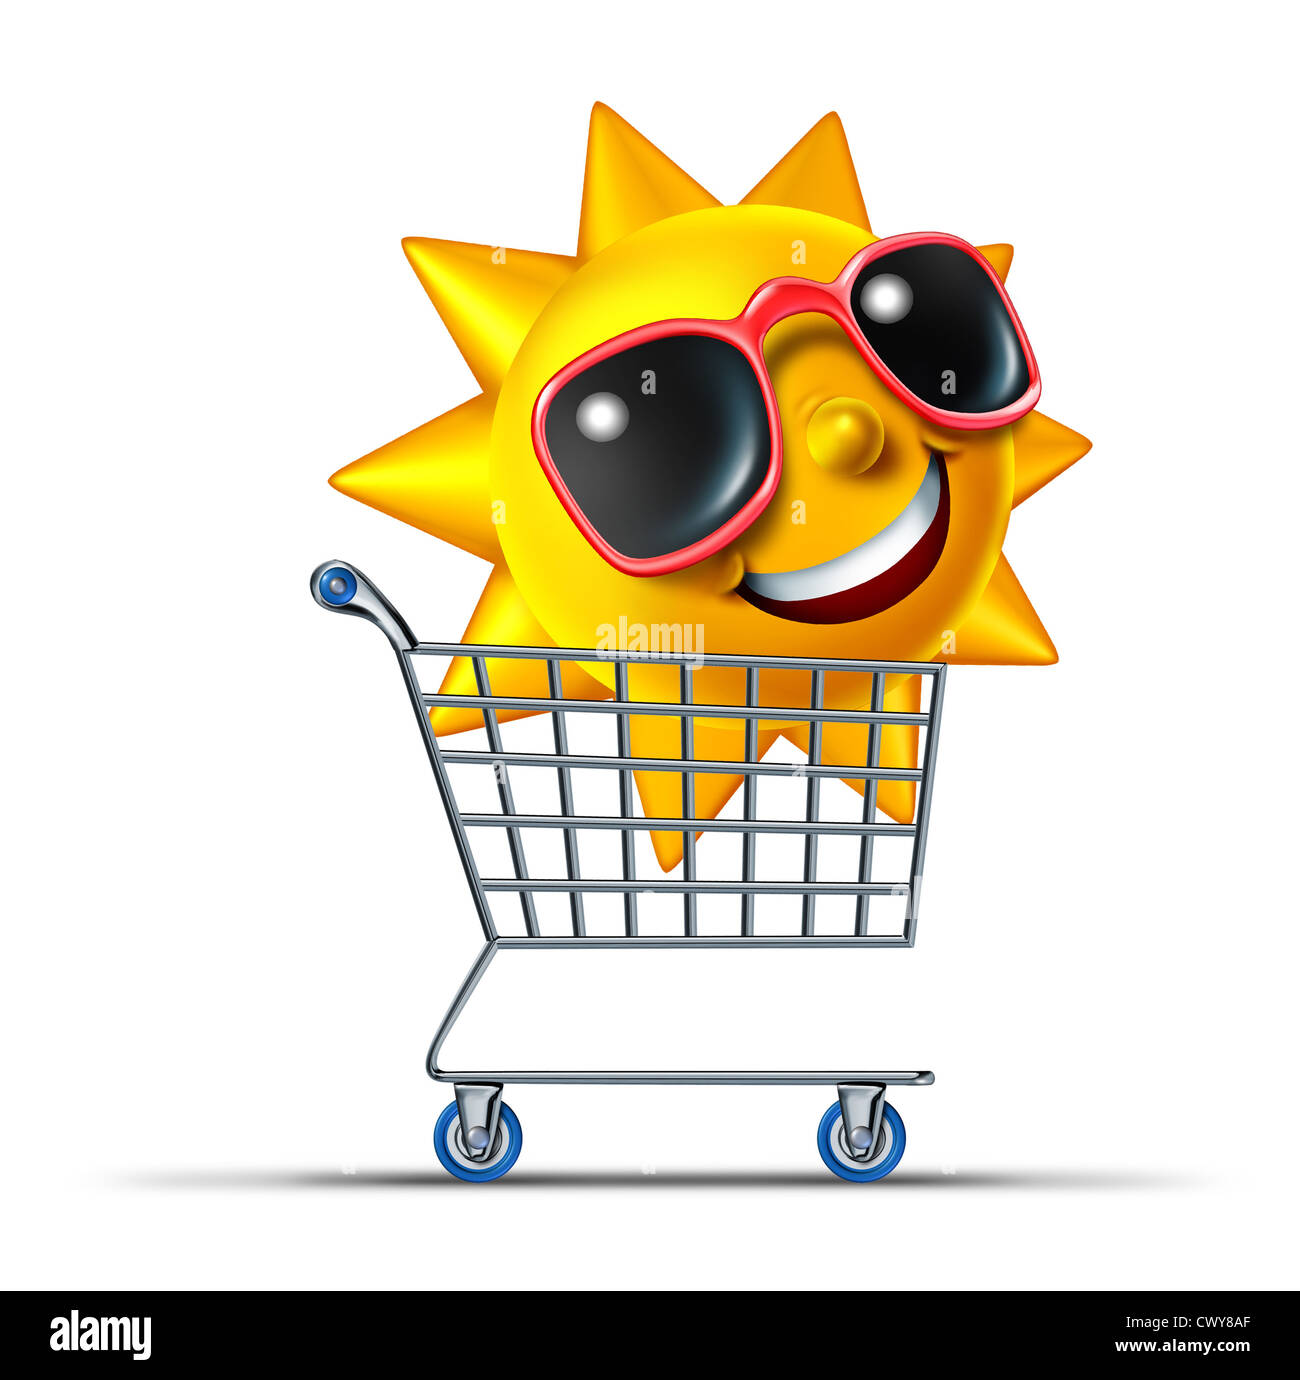 Urlaub Tourismus Geschäftskonzept mit einem shopping Cart und ein lustiges Sommer Sonne Charakter mit Sonnenbrille, ein beliebtes Ziel für Erholung und Freizeit Reisen Rest als Symbol des Internet Reisen buchen. Stockfoto